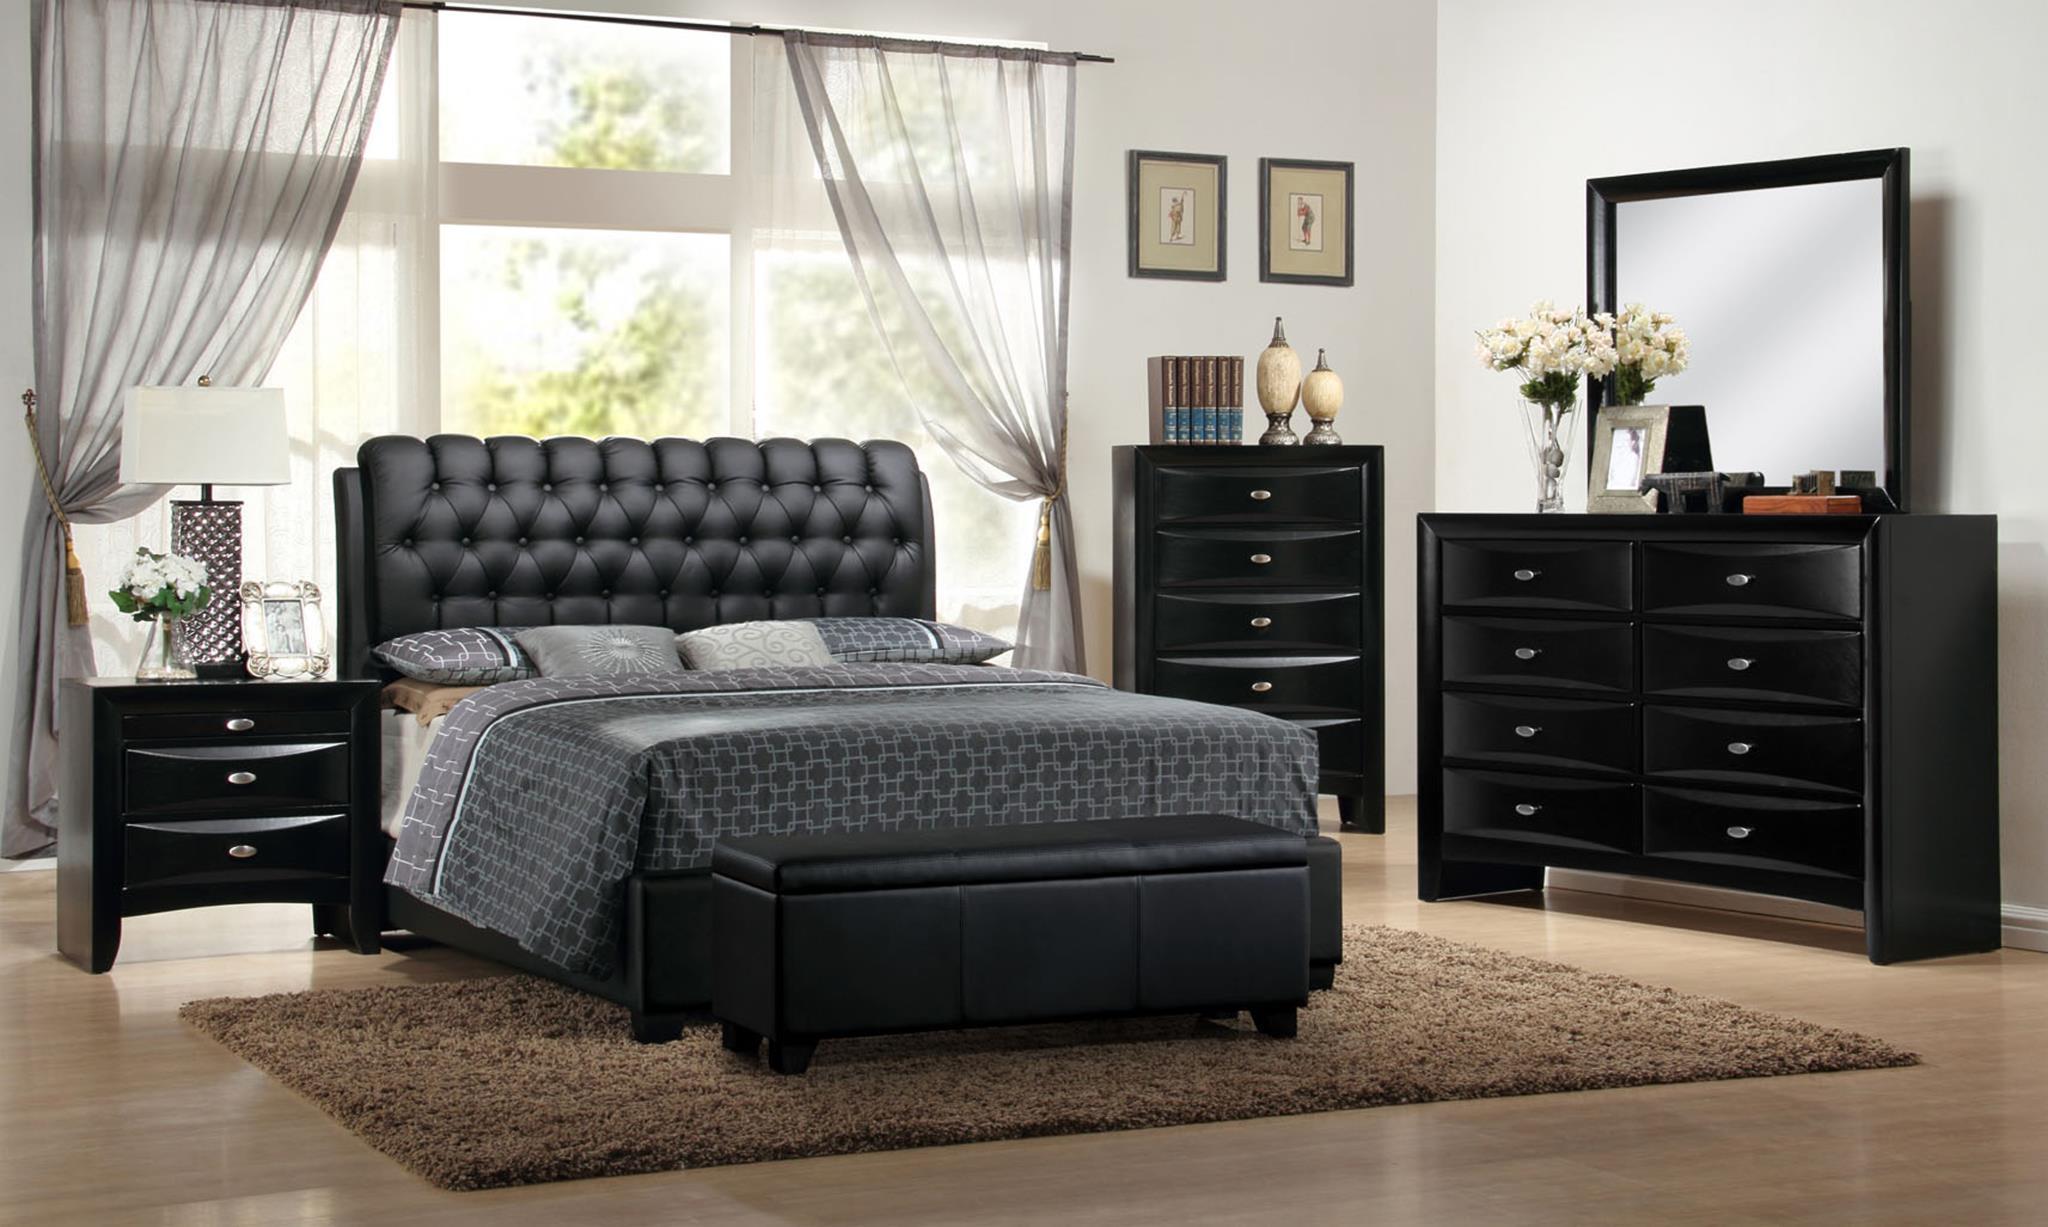 

    
MYCO Furniture 2956K-BK Barnes Black Eco Leather King Platform Bedroom Set 5Pcs
